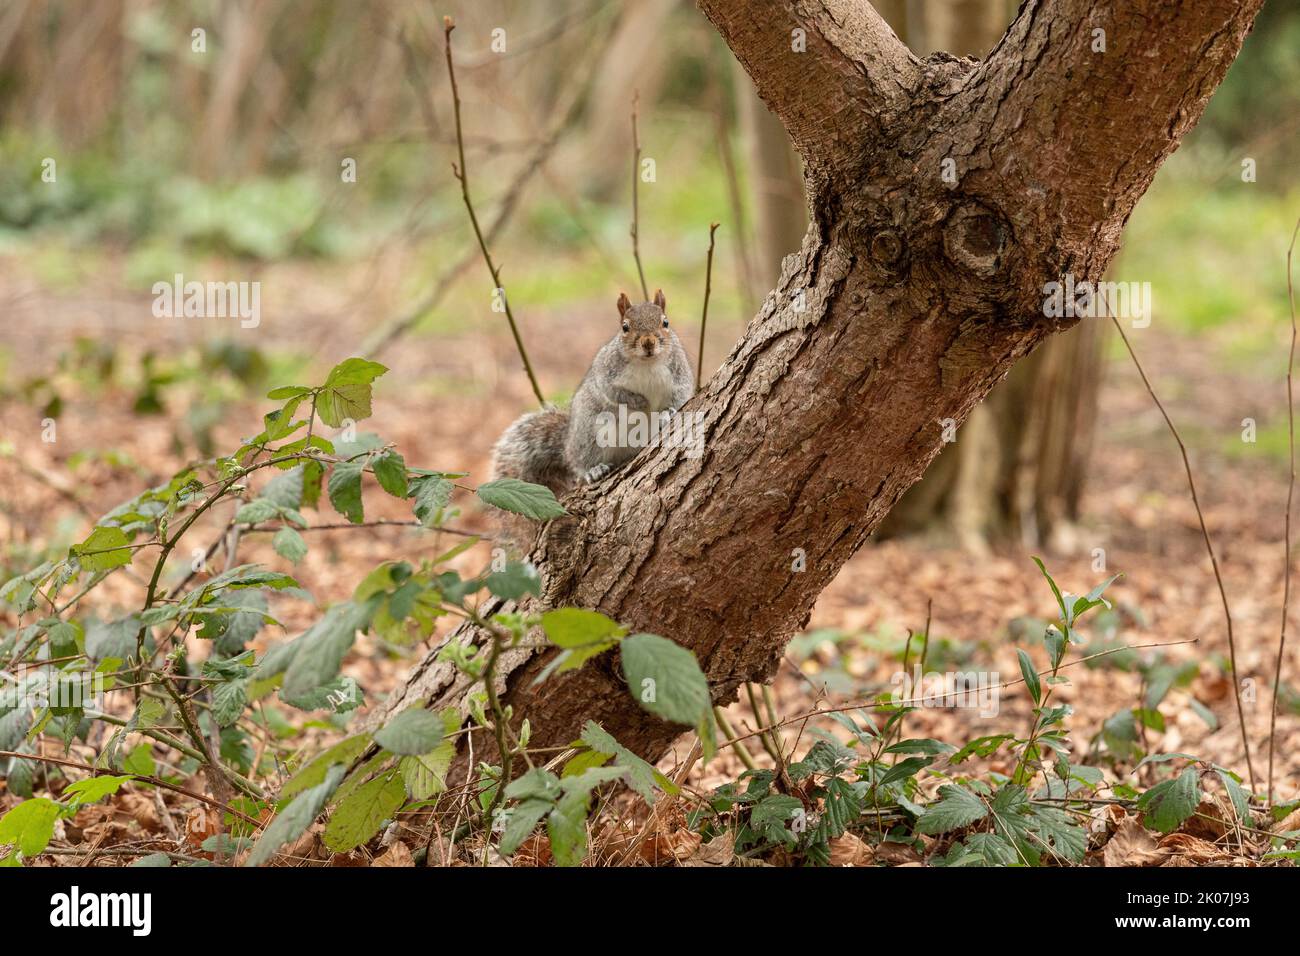 Écureuil gris du Royaume-Uni assis dans un arbre regardant la caméra, dans un environnement naturel Banque D'Images